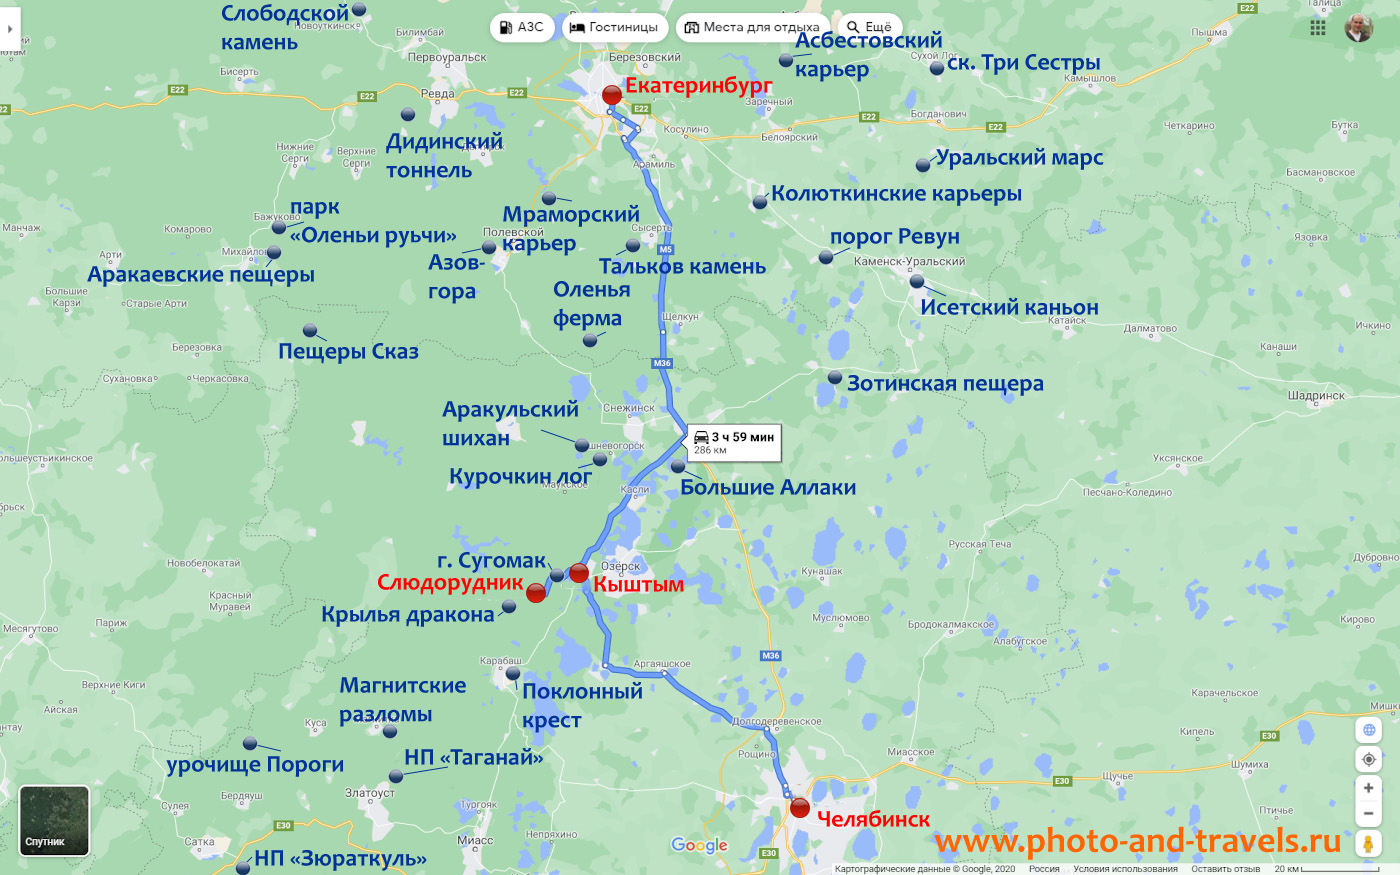 2. Карта со схемой проезда из Екатеринбурга или из Челябинска в поселок Слюдорудник к заброшенной шахте.